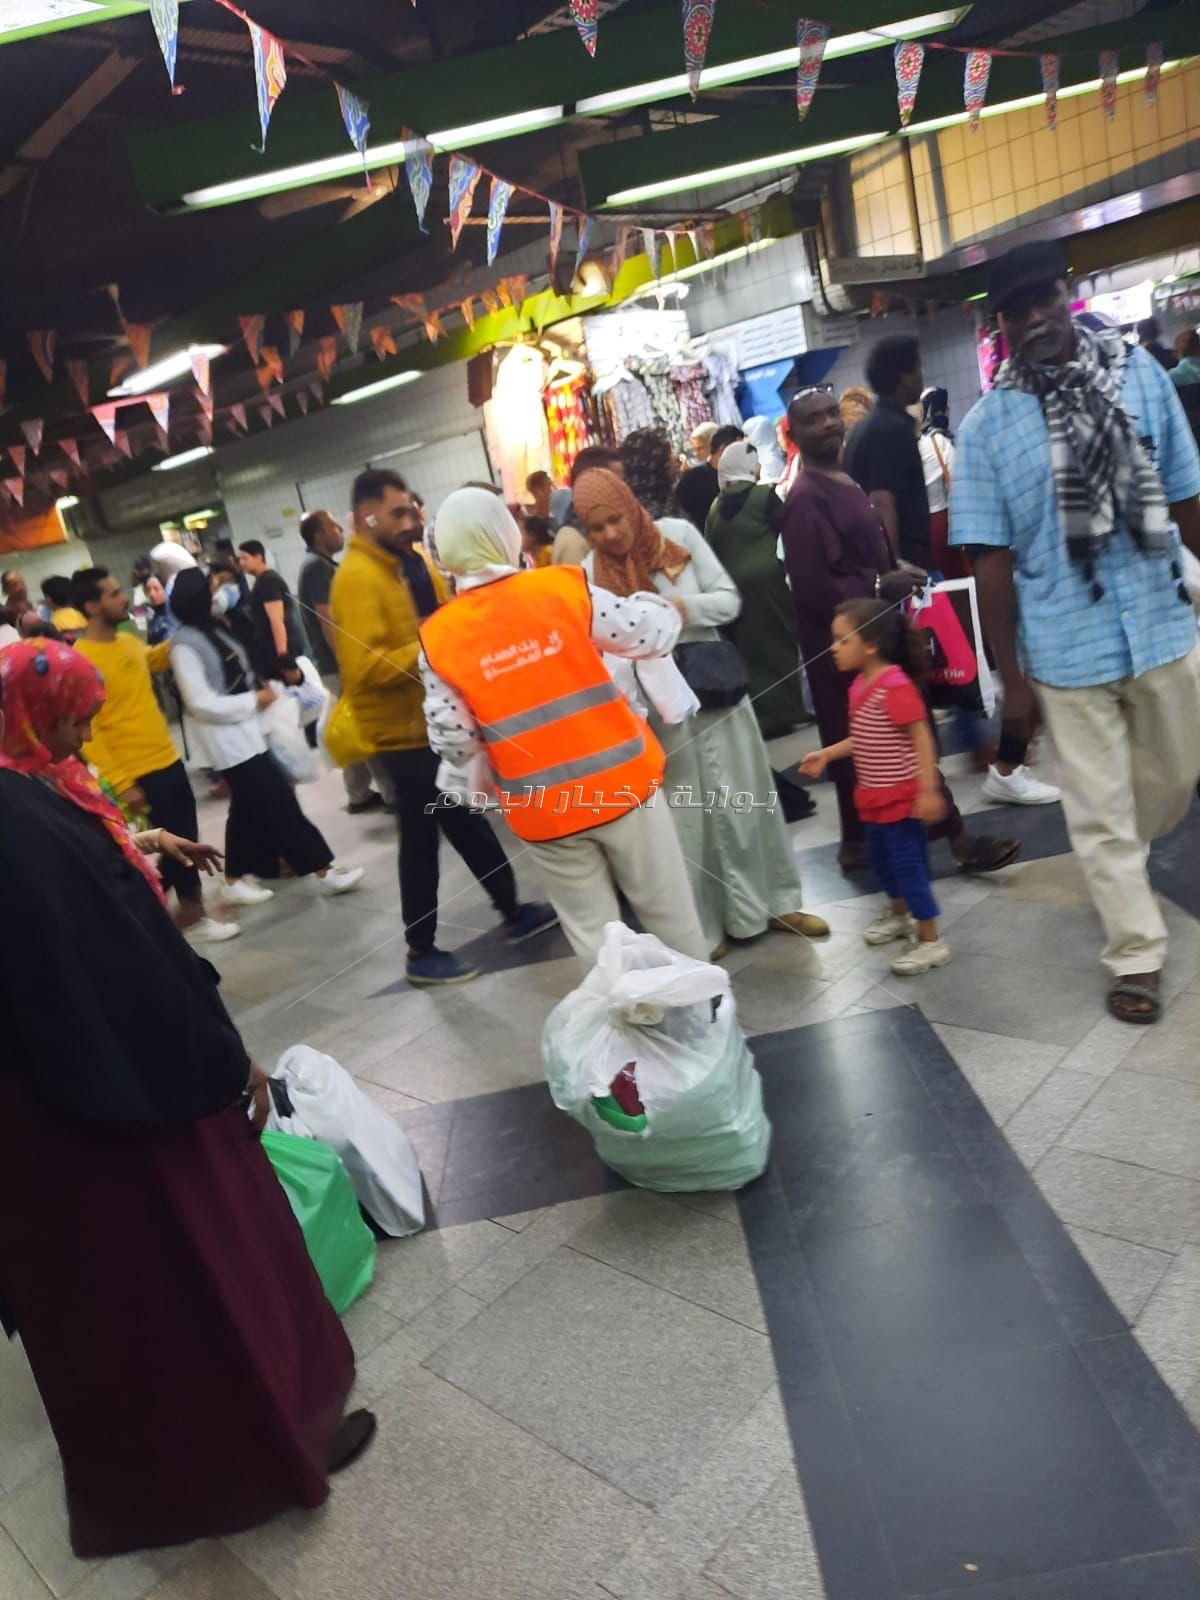 الإنتهاء من توزيع مايقرب من 100 ألف وجبة إفطار في مترو الأنفاق